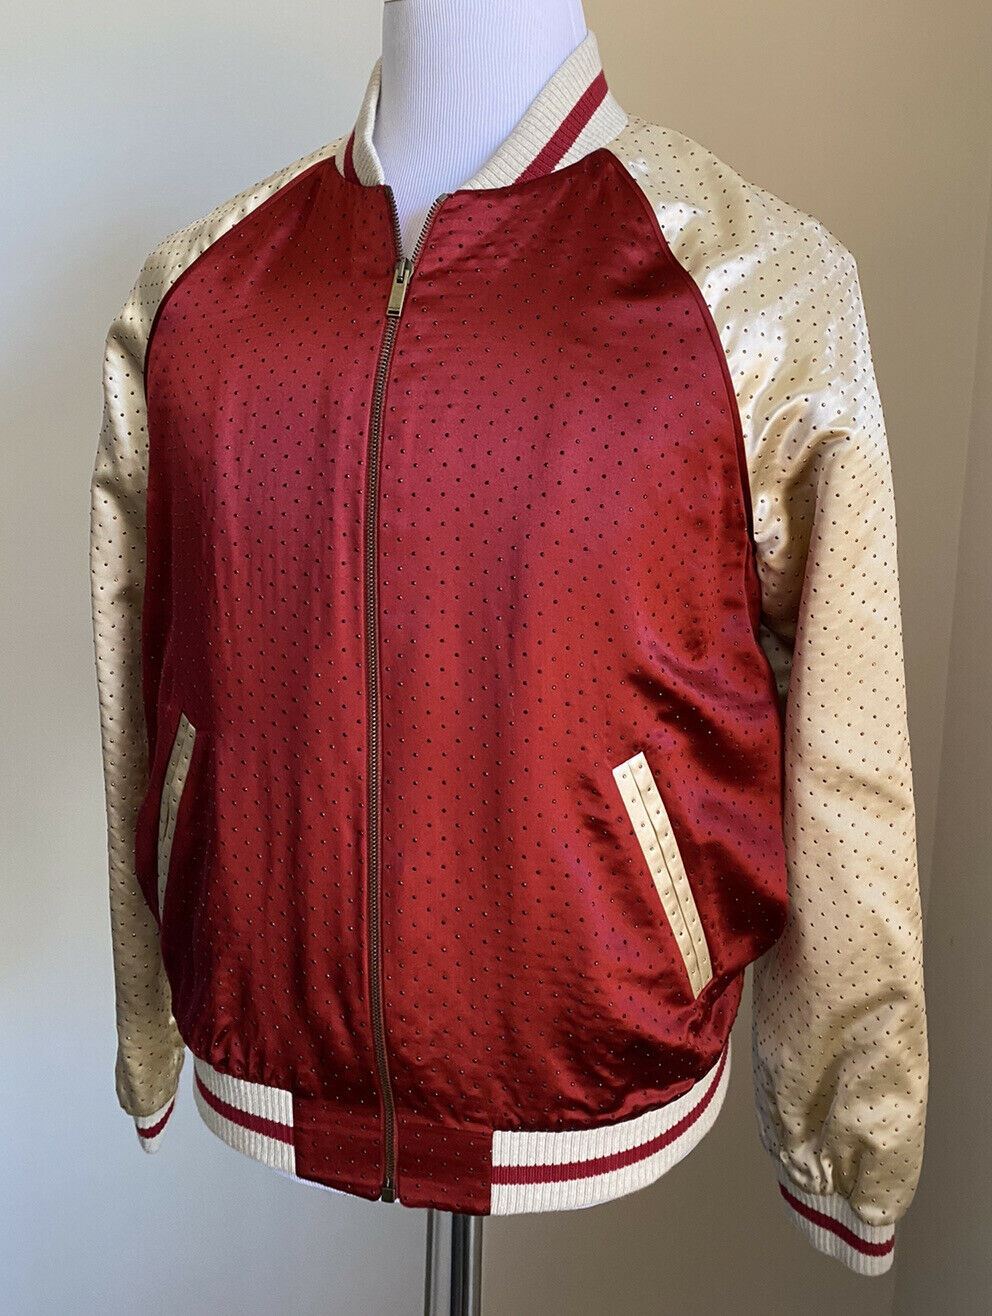 Новая куртка Saint Laurent Versity за 3990 долларов, красное/кремовое 42 США/52 ЕС Италия